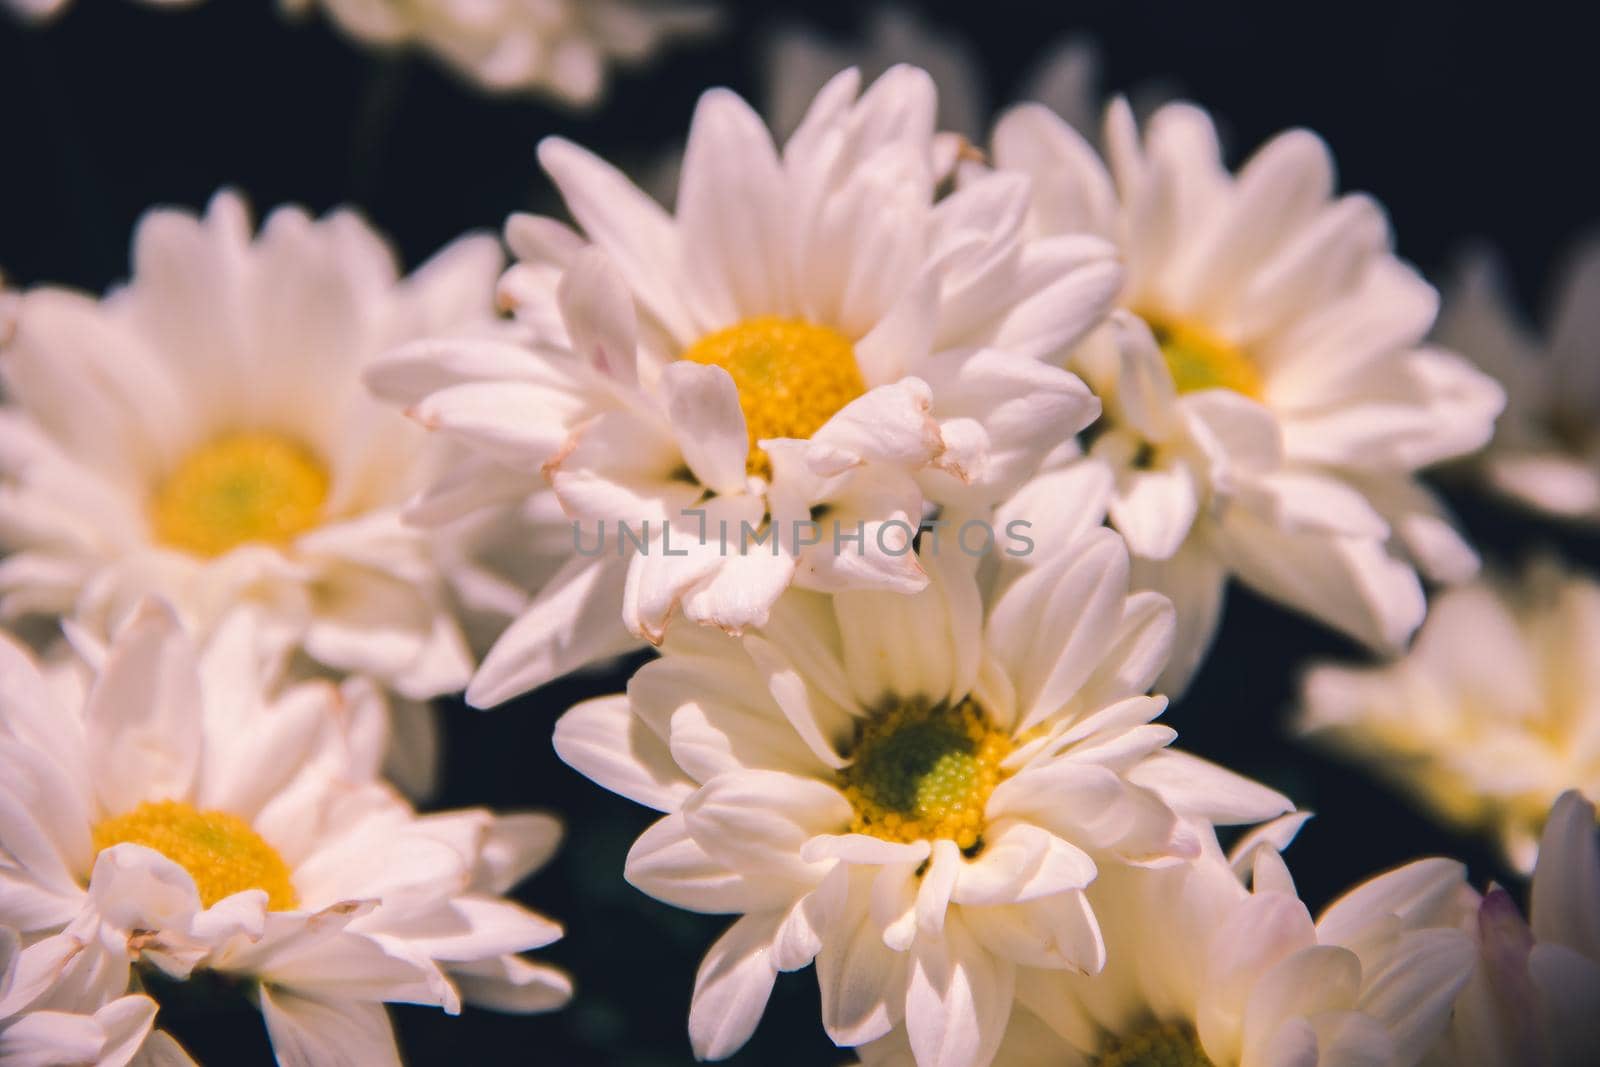 White Chrysanthemum Flower Close Up by Puripatt